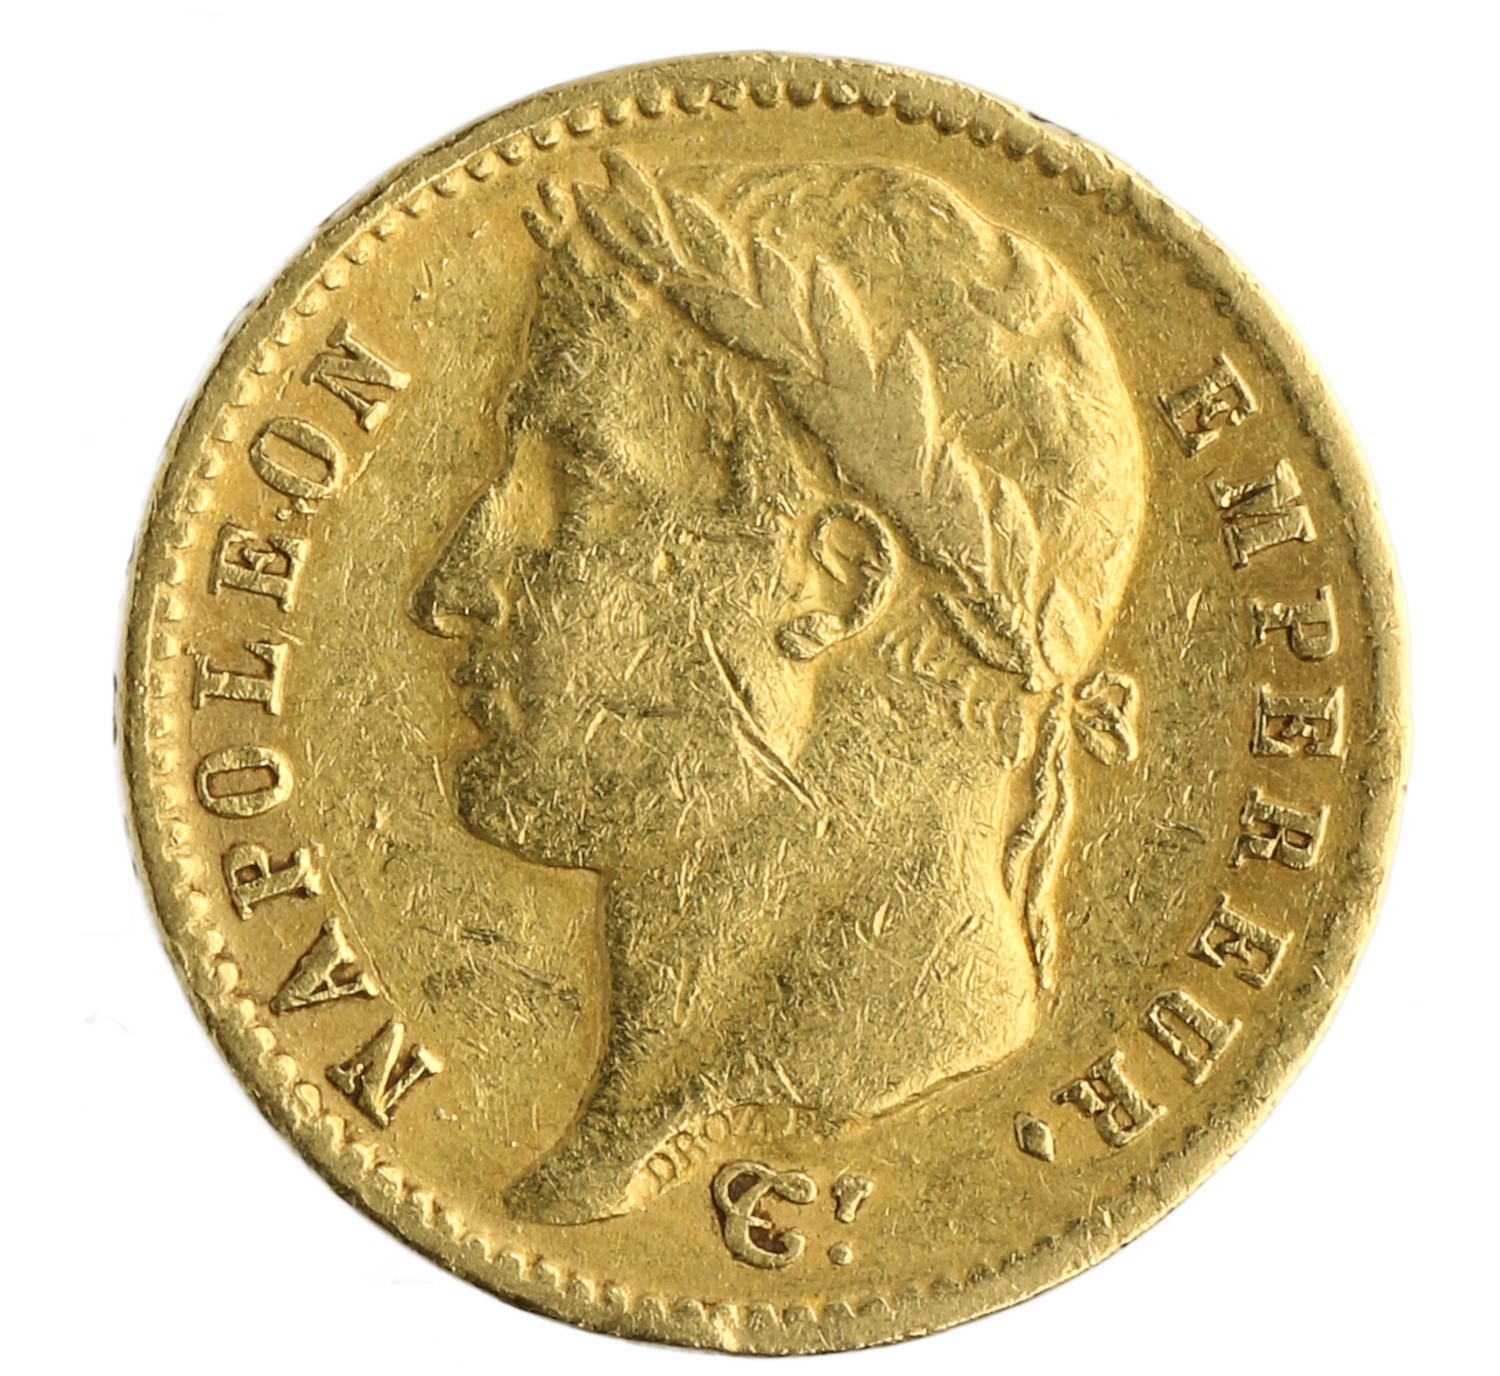 20 Francs - France - 1811 A